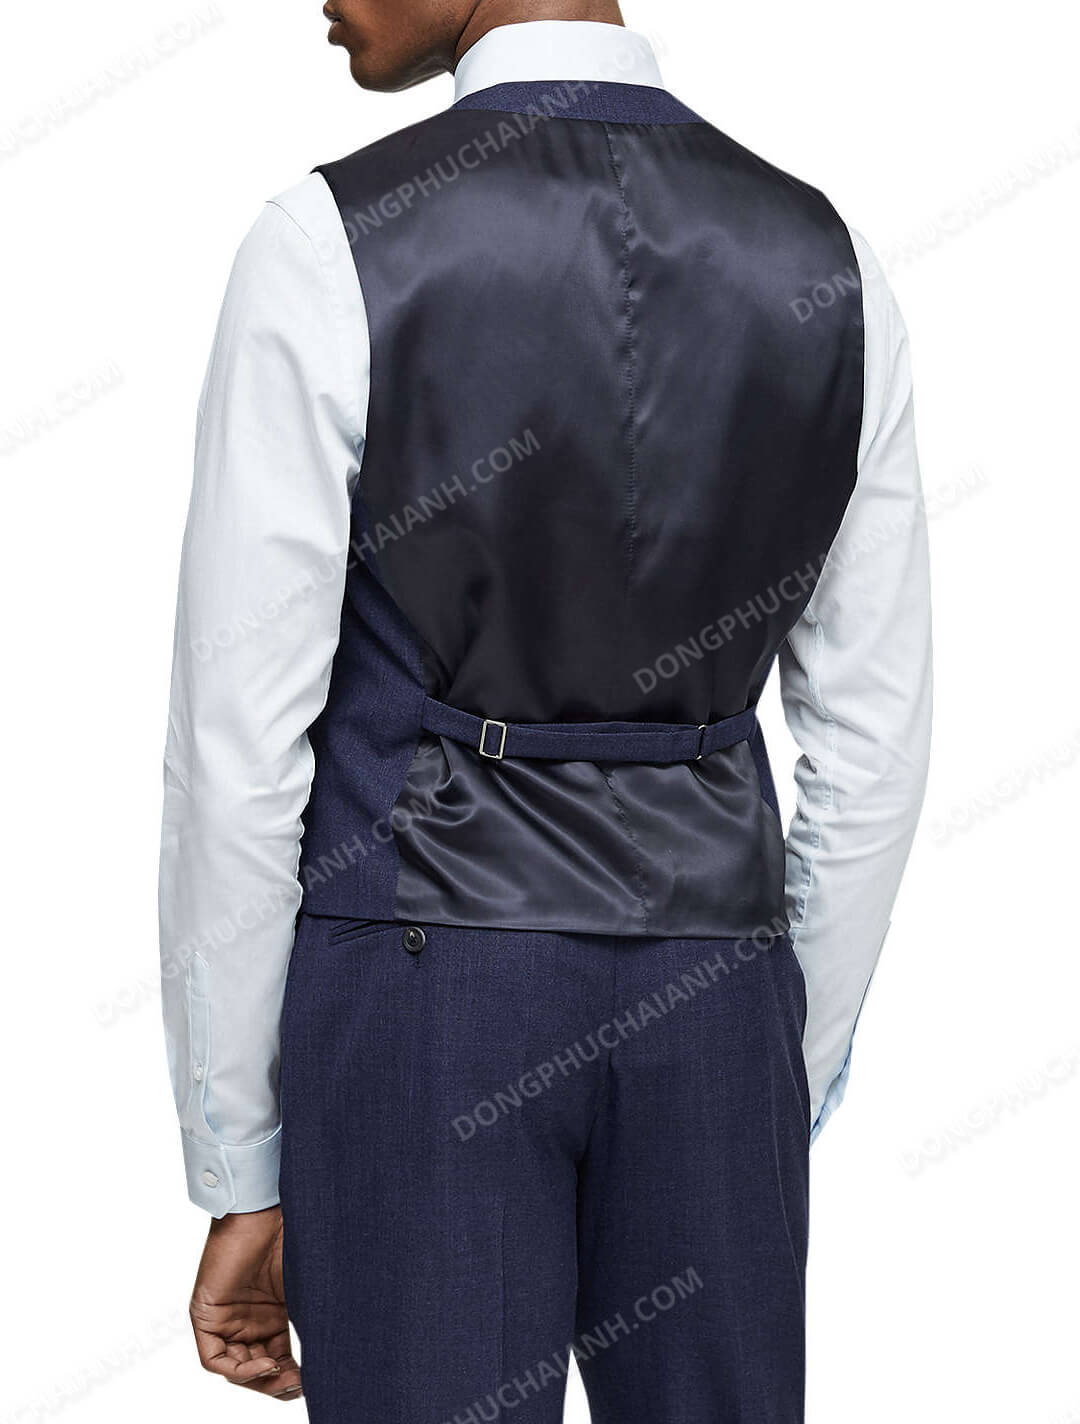 Một mẫu áo gile nam công sở trẻ trung, năng động đang được khách hàng hết sức ưa chuộng.